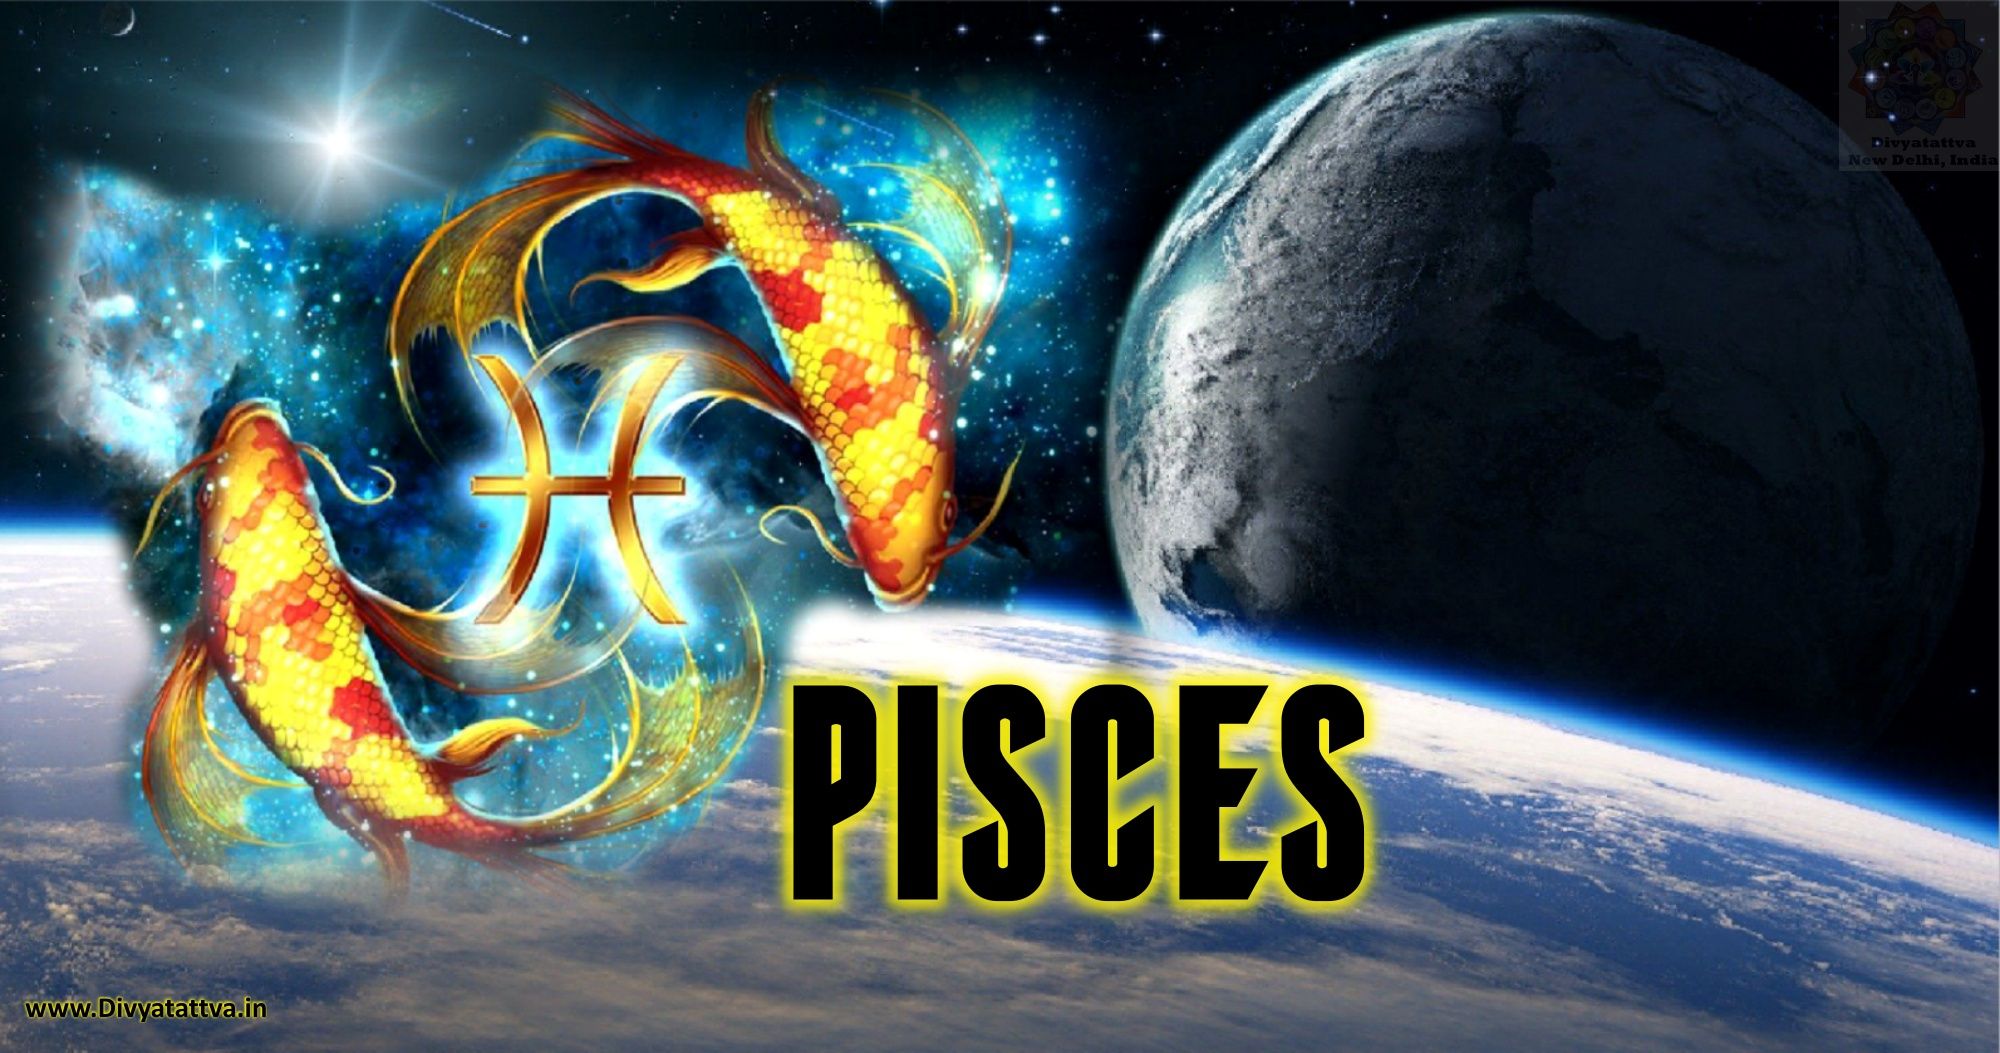 Pisces zodiac sign - Gemini, Pisces, Taurus, Scorpio